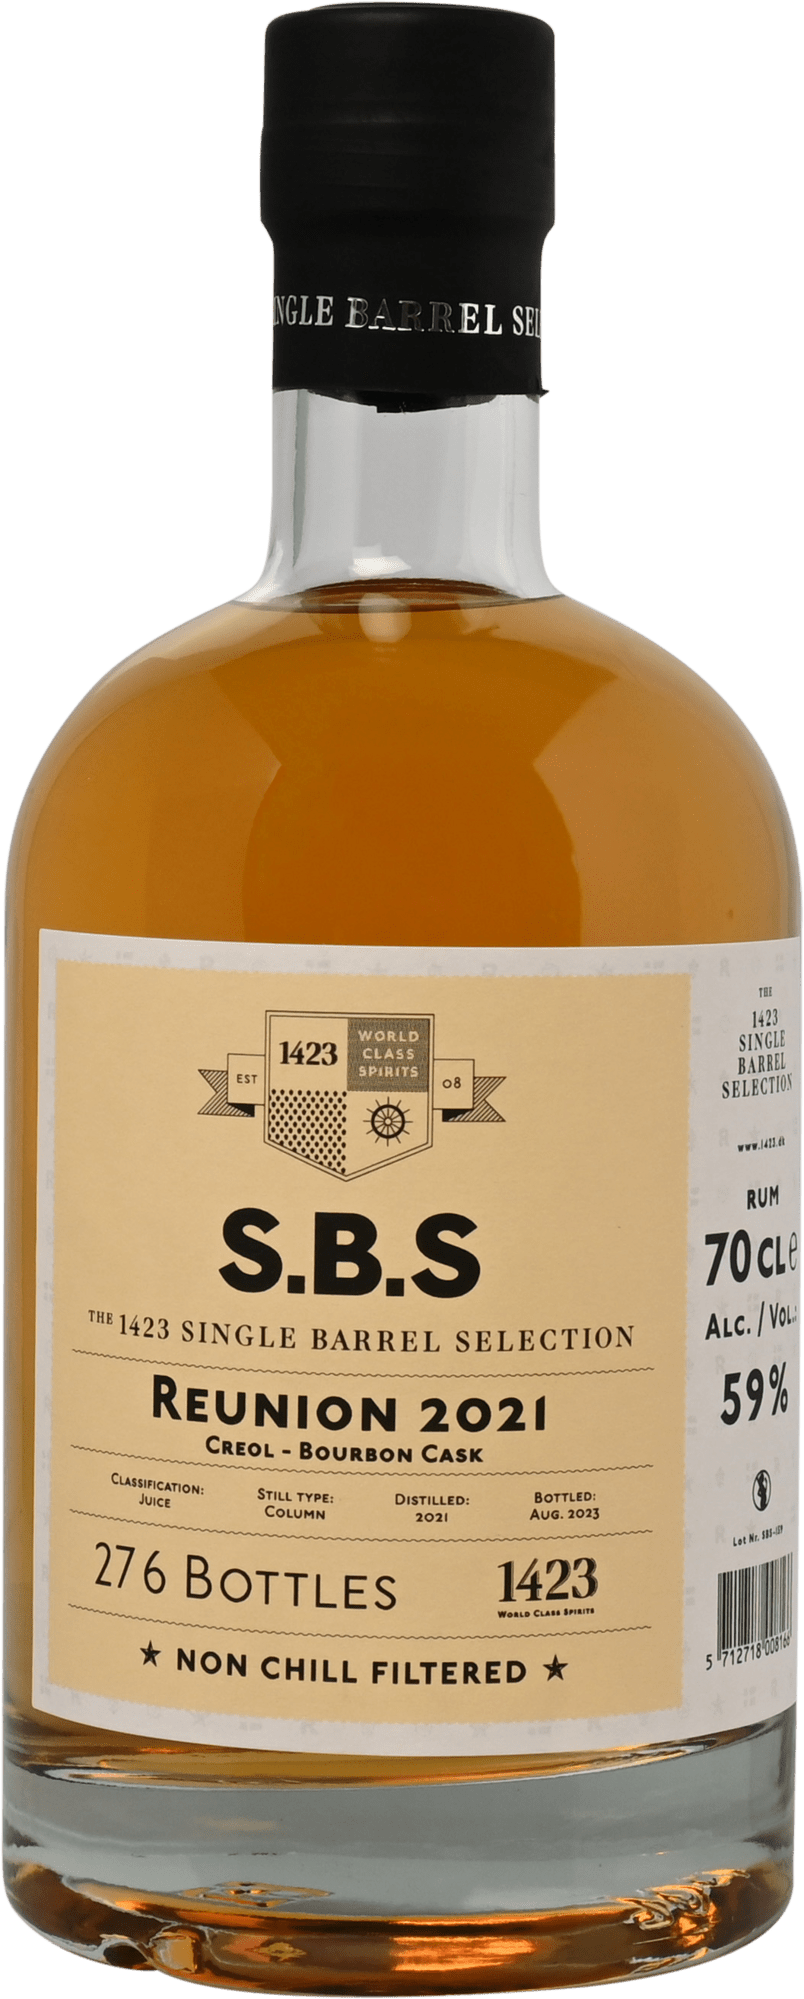 S.B.S Reunion 2021 Creol Bourbon Cask, GIFT